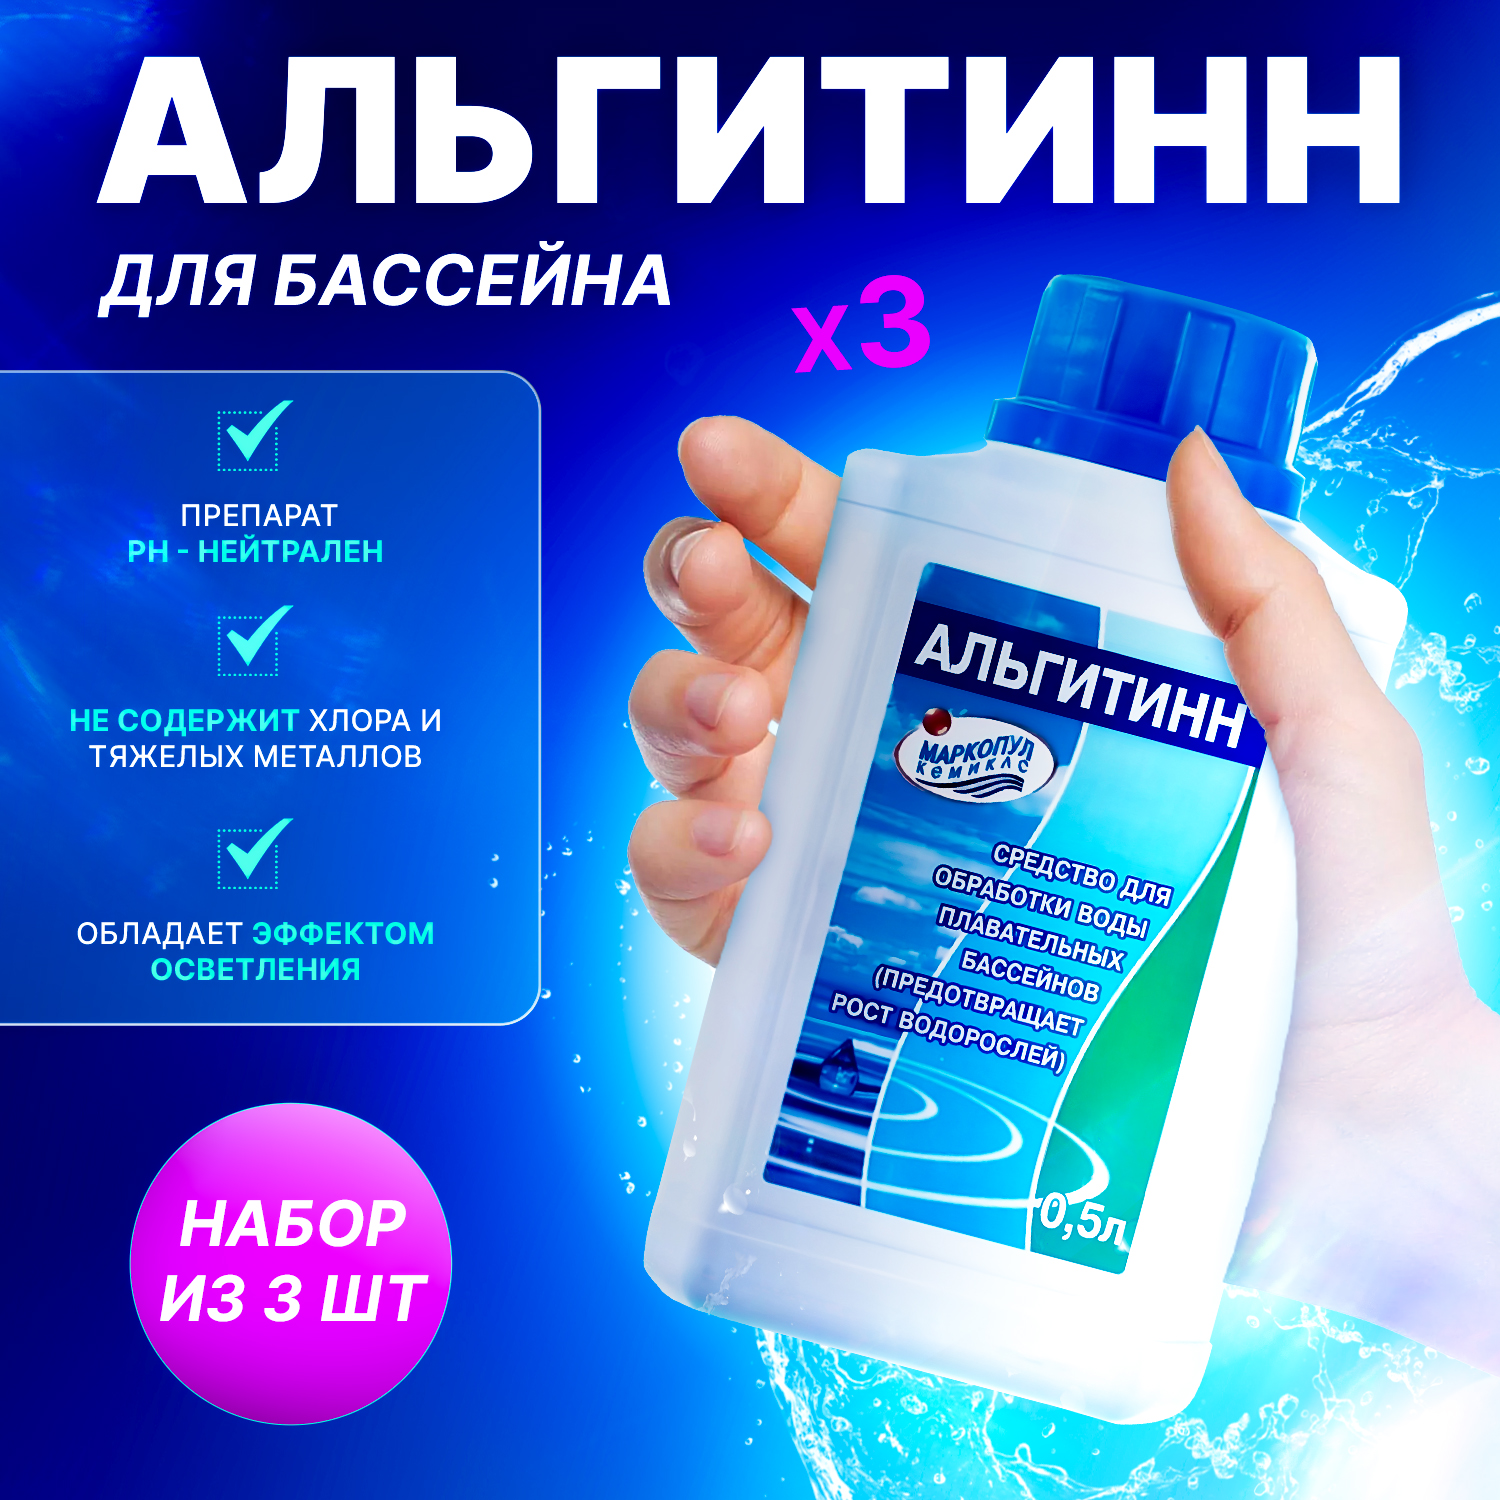 Химия для бассейна Маркопул кемиклс Альгитинн для устранения водорослей 0,5 л, 3 бутылки